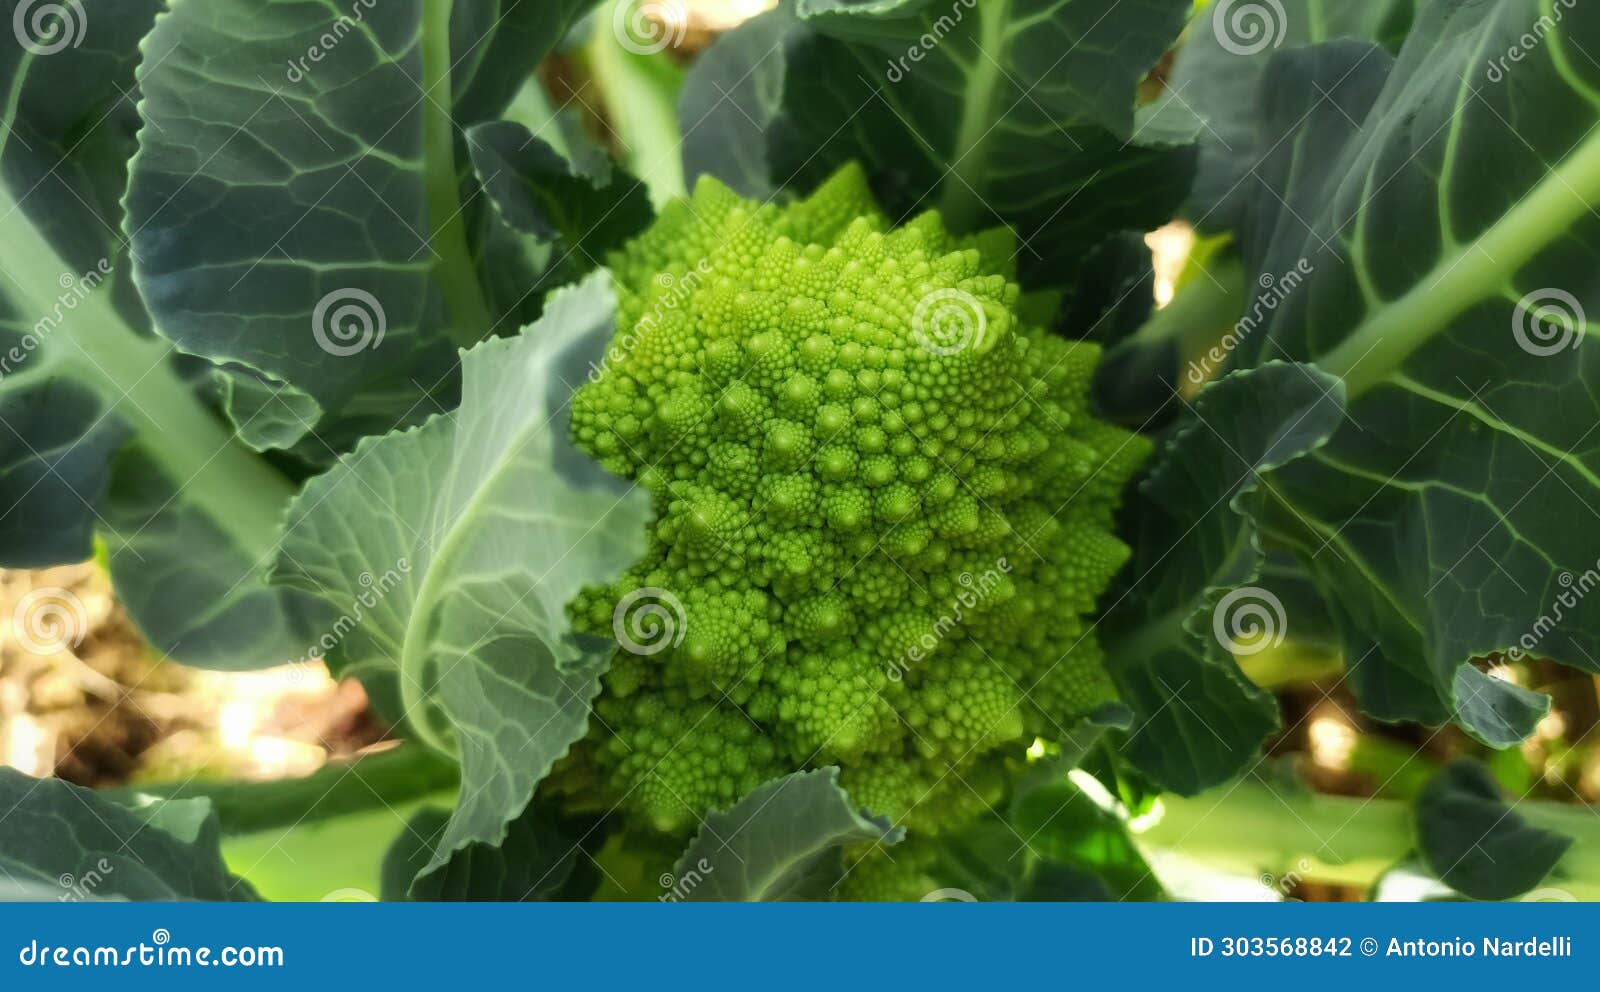 ortaggi - pianta del cavolo broccolo romano